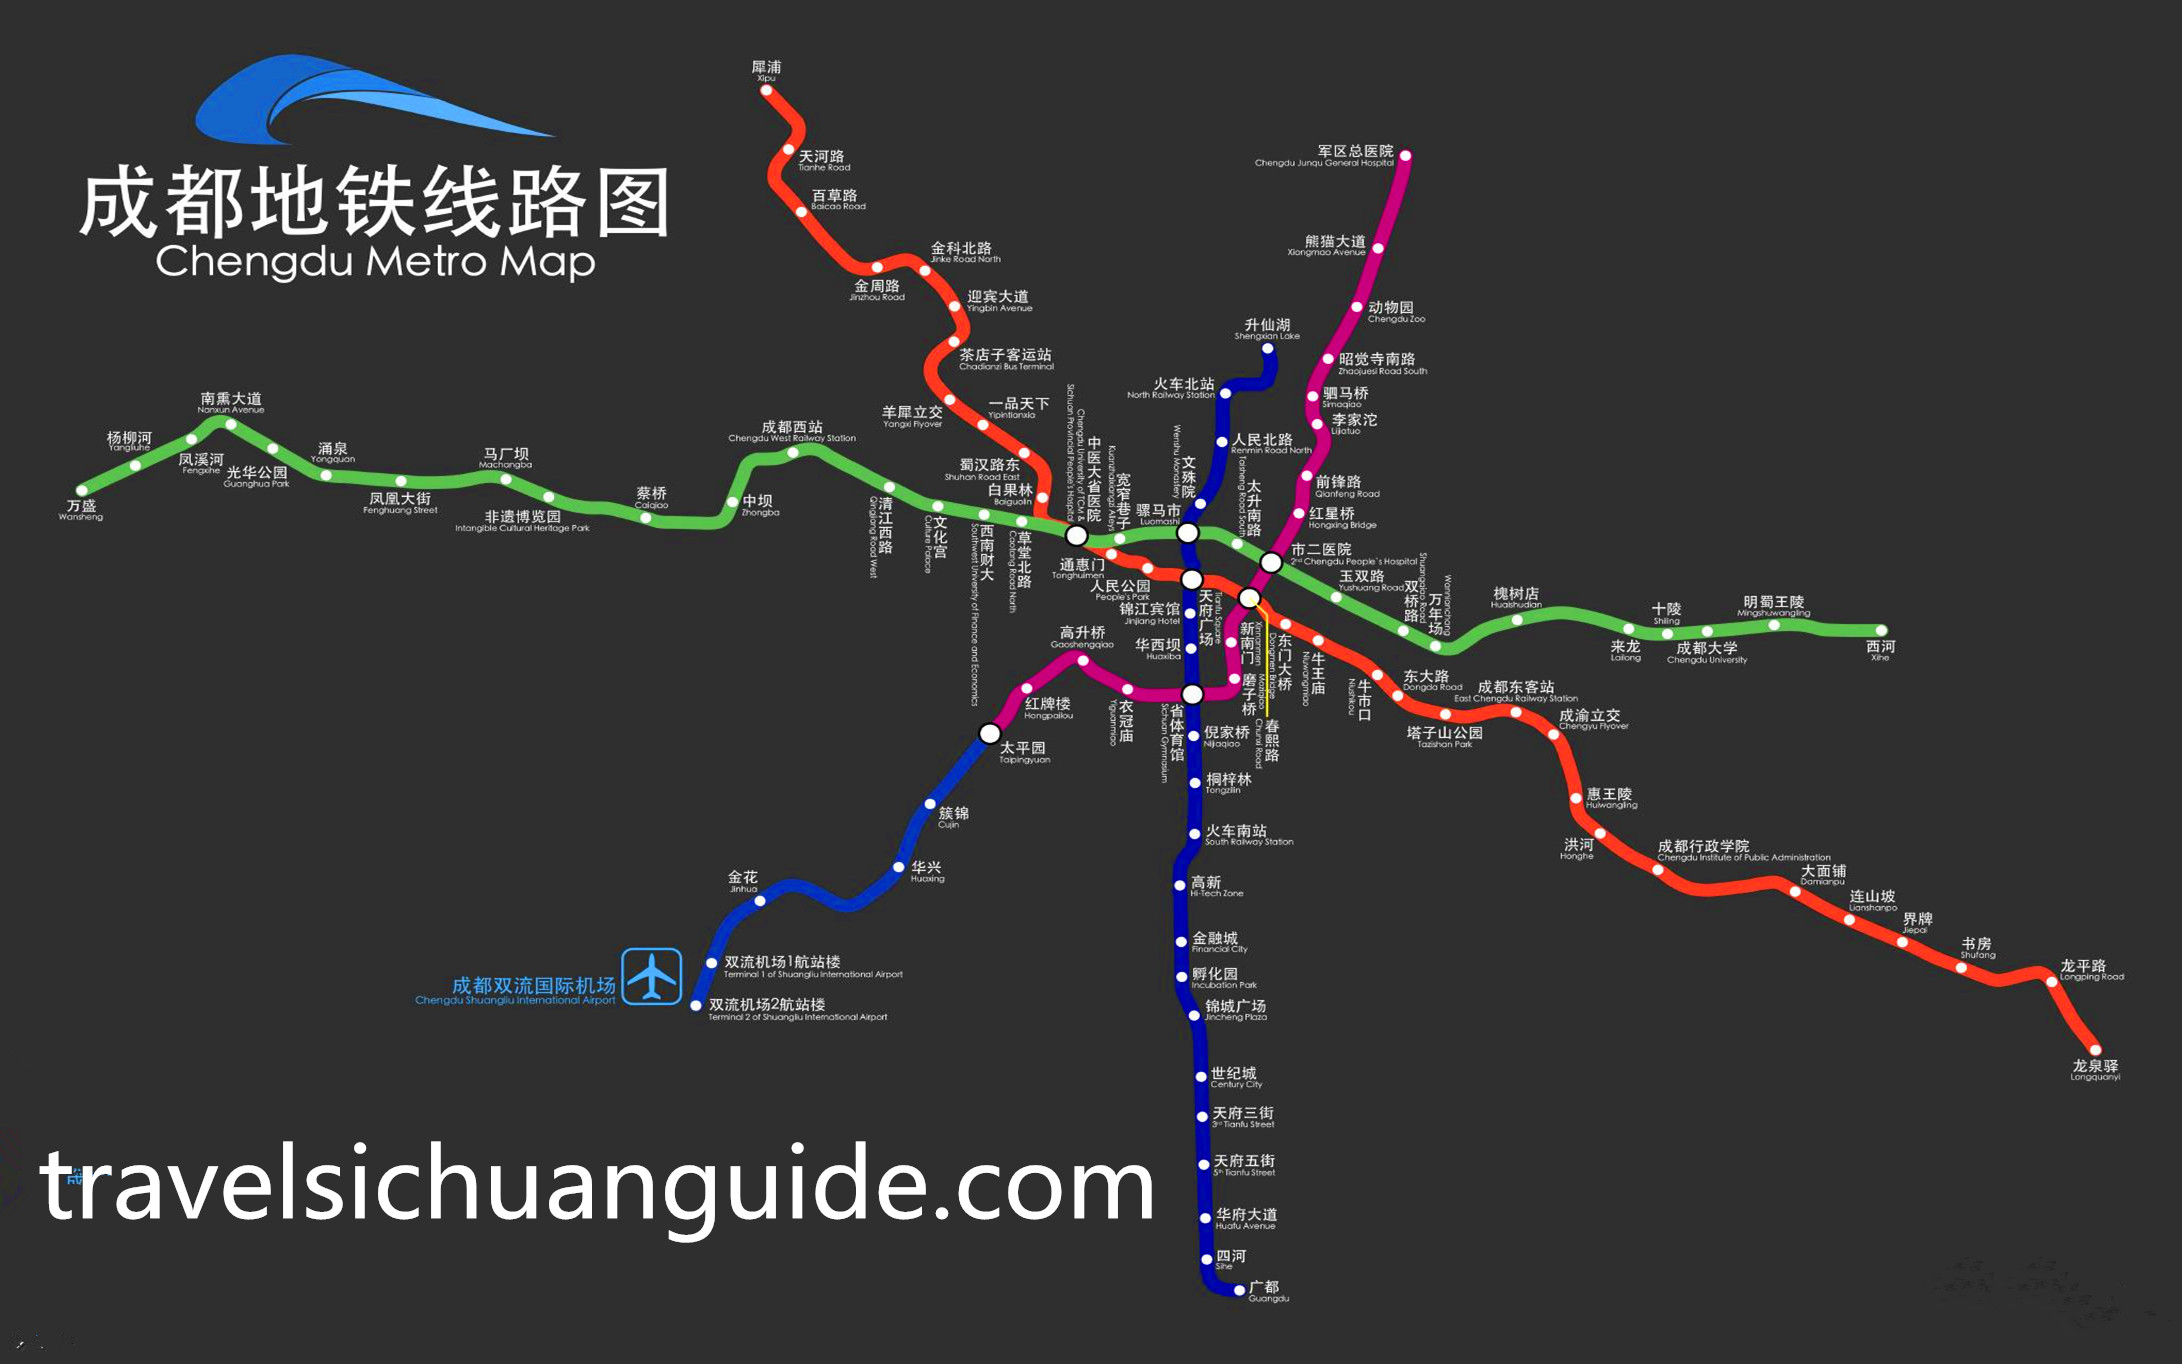 Chengdu Metro Maps